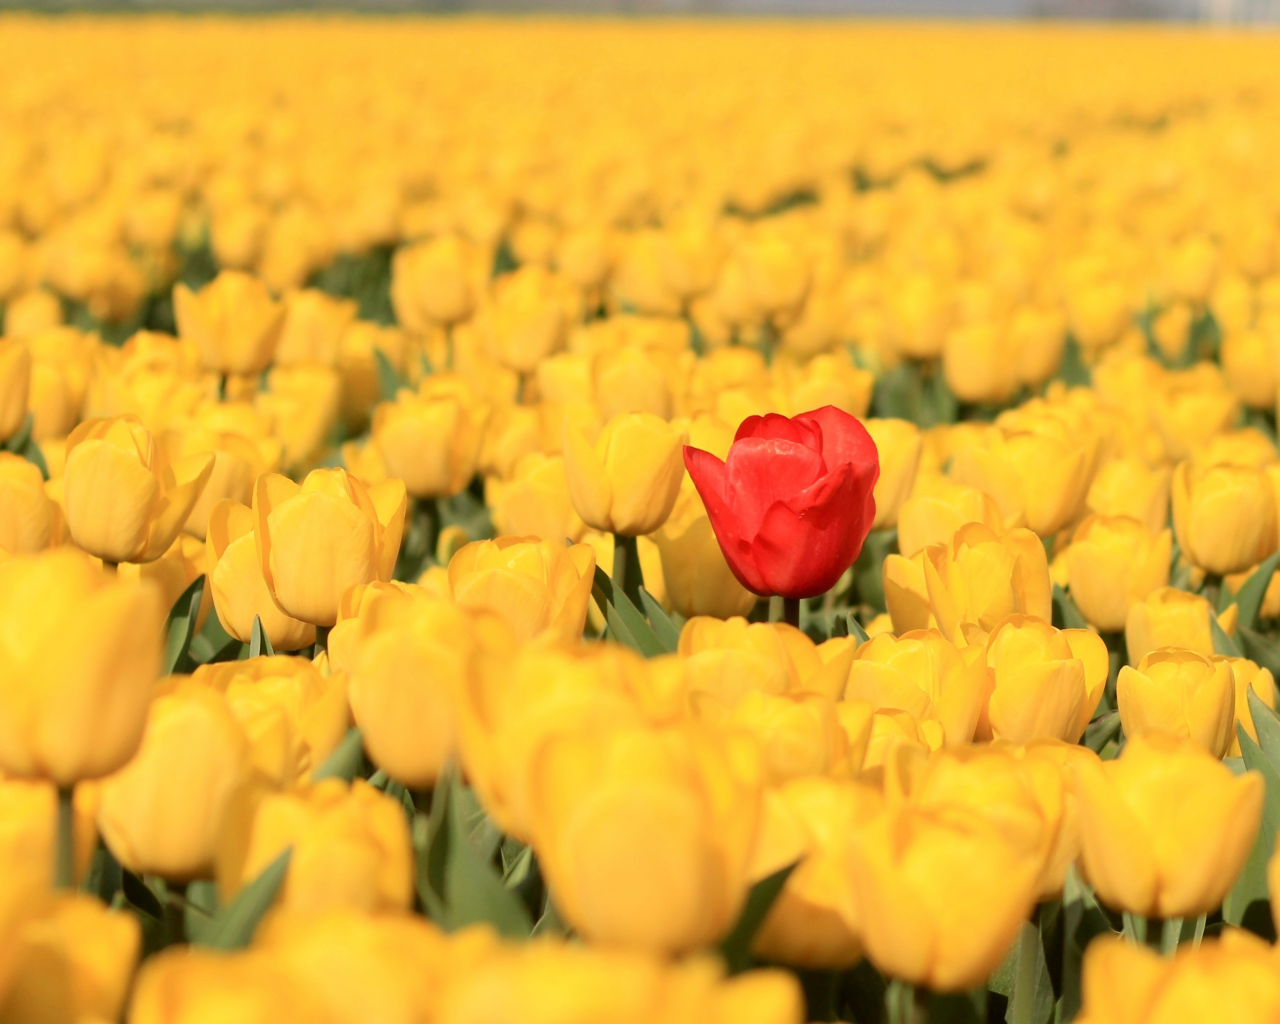 бутоны, тюльпаны, красный тюльпан, жёлтые тюльпаны, много, плантация